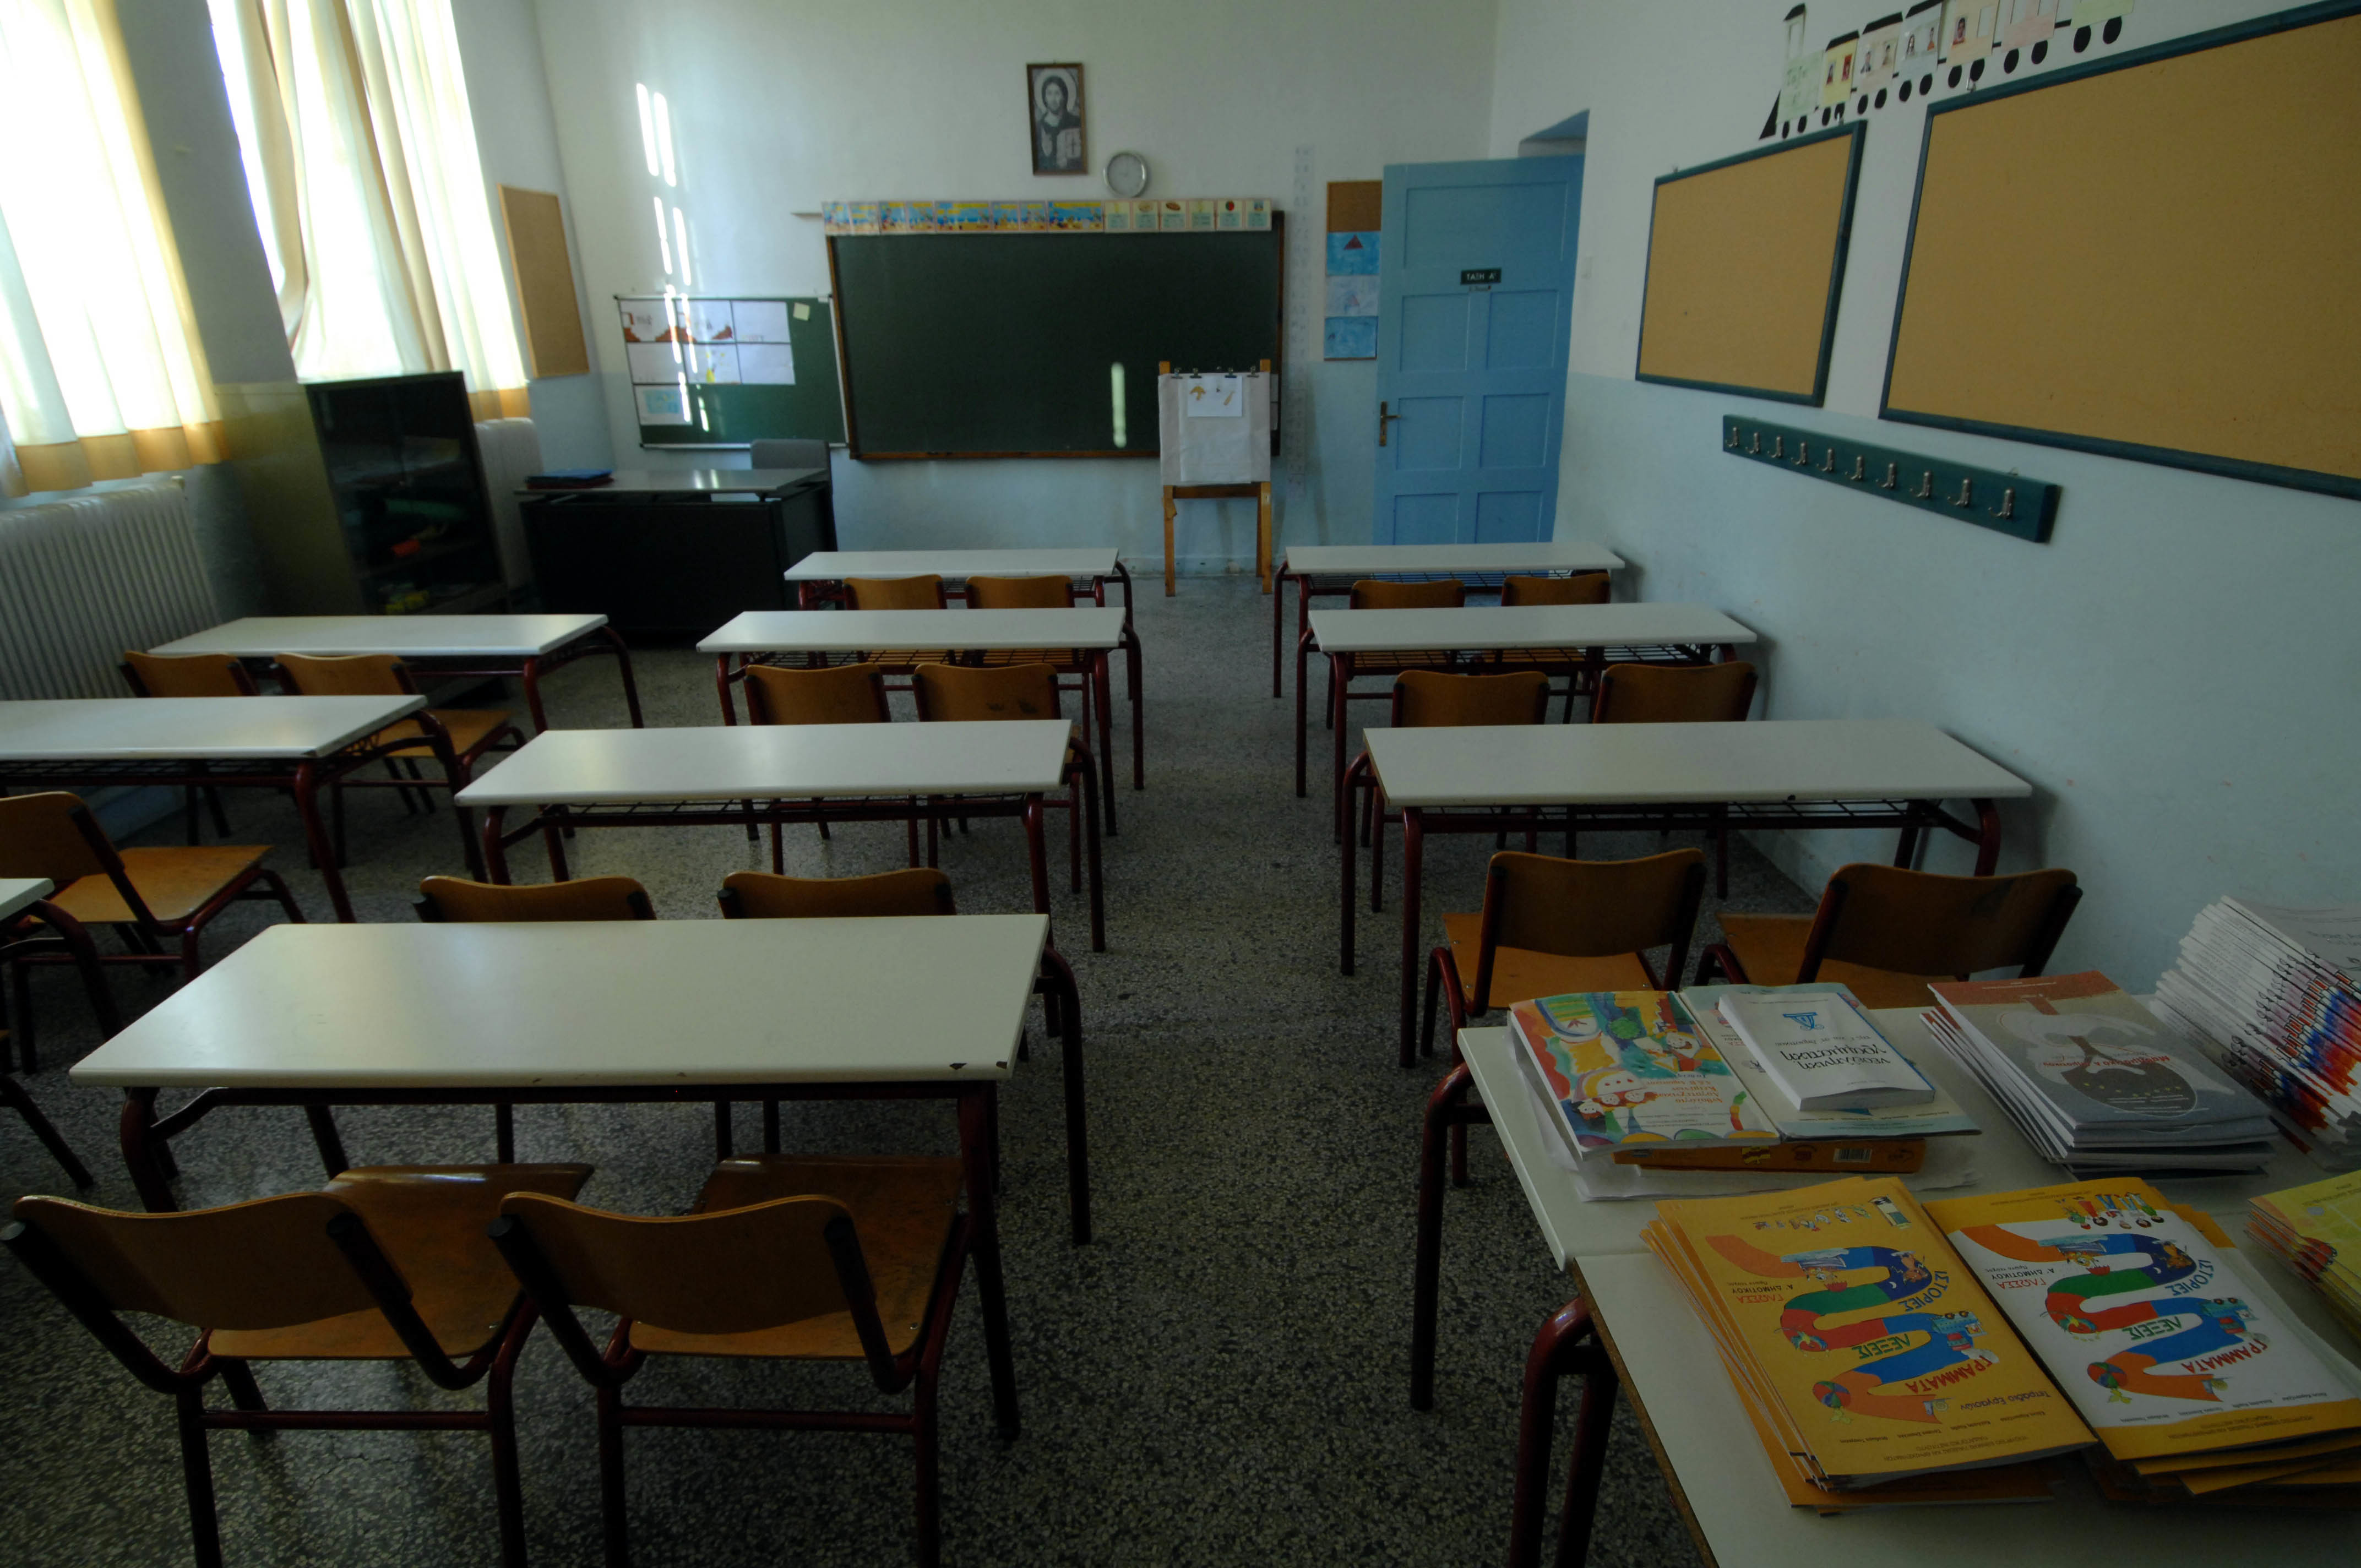 Καταργούνται σχολεία – Νέες συγχωνεύσεις σε δημοτικά, γυμνάσια, λύκεια